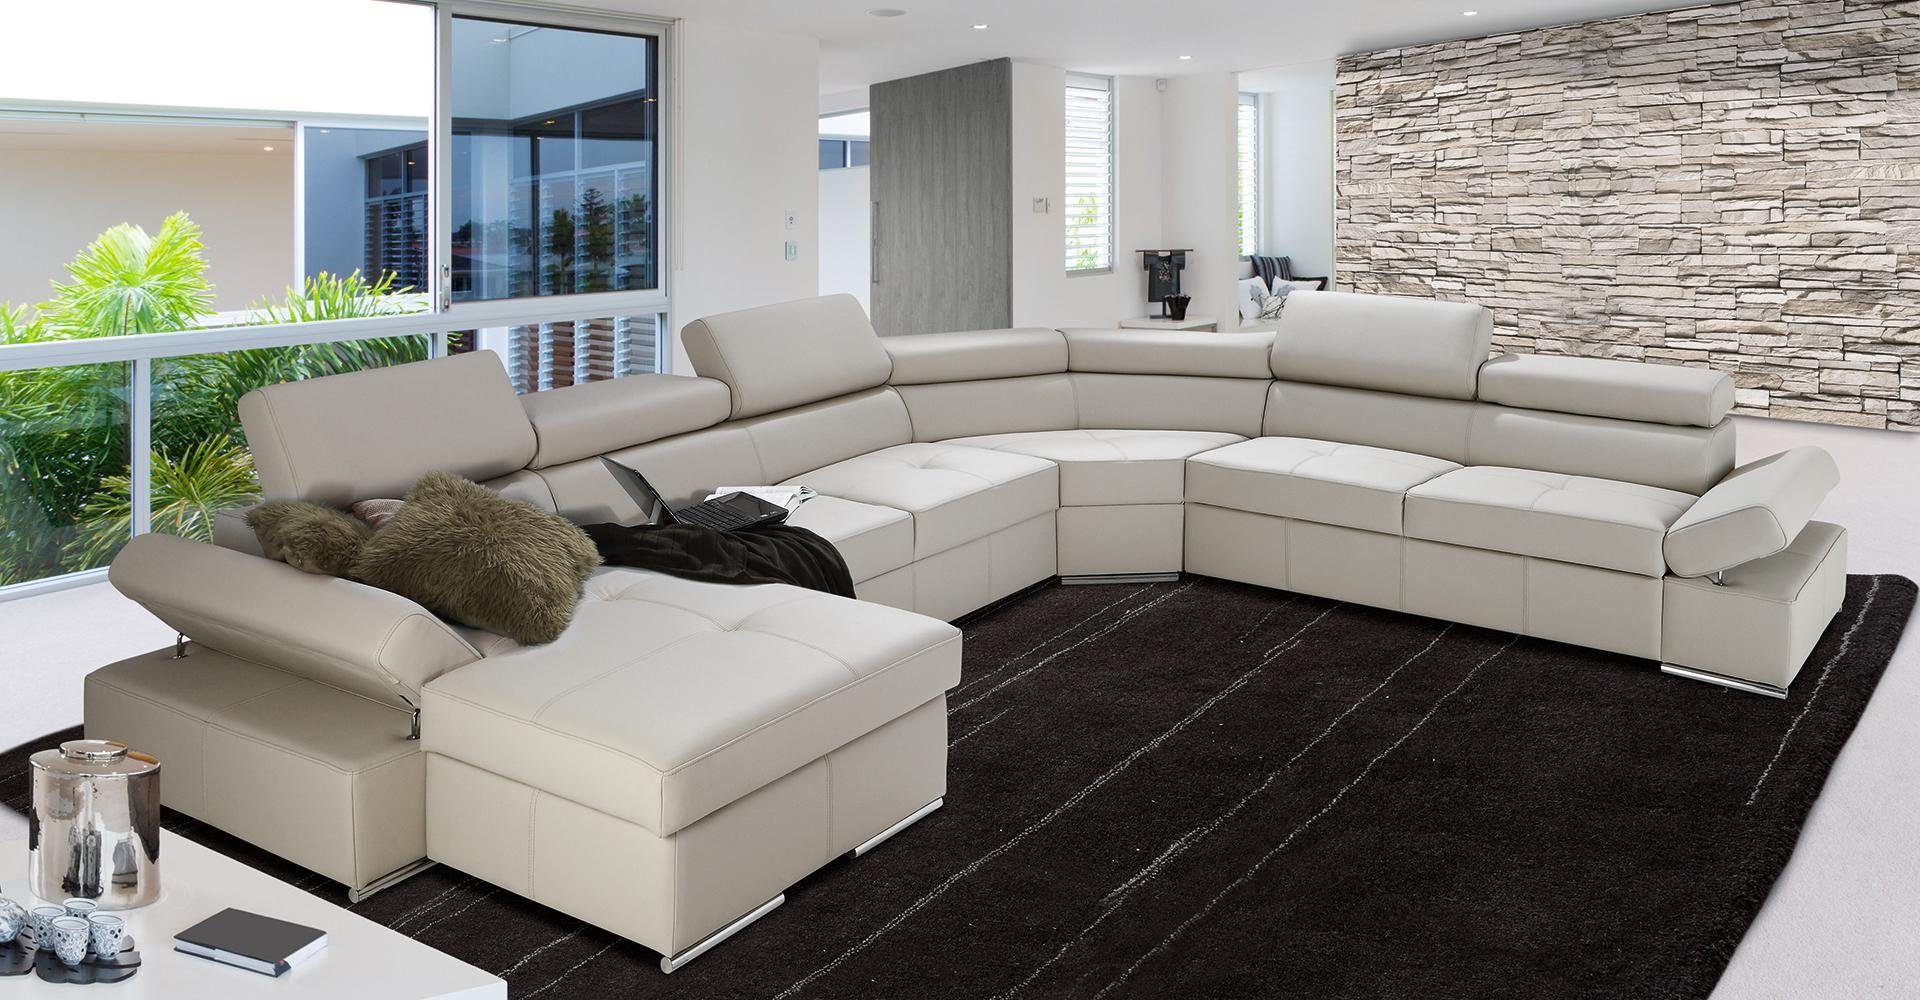 JVmoebel Ecksofa, XXL Wohnlandschaft Sofa Couch Polster Design Eck Garnitur Sofas 100% Beige